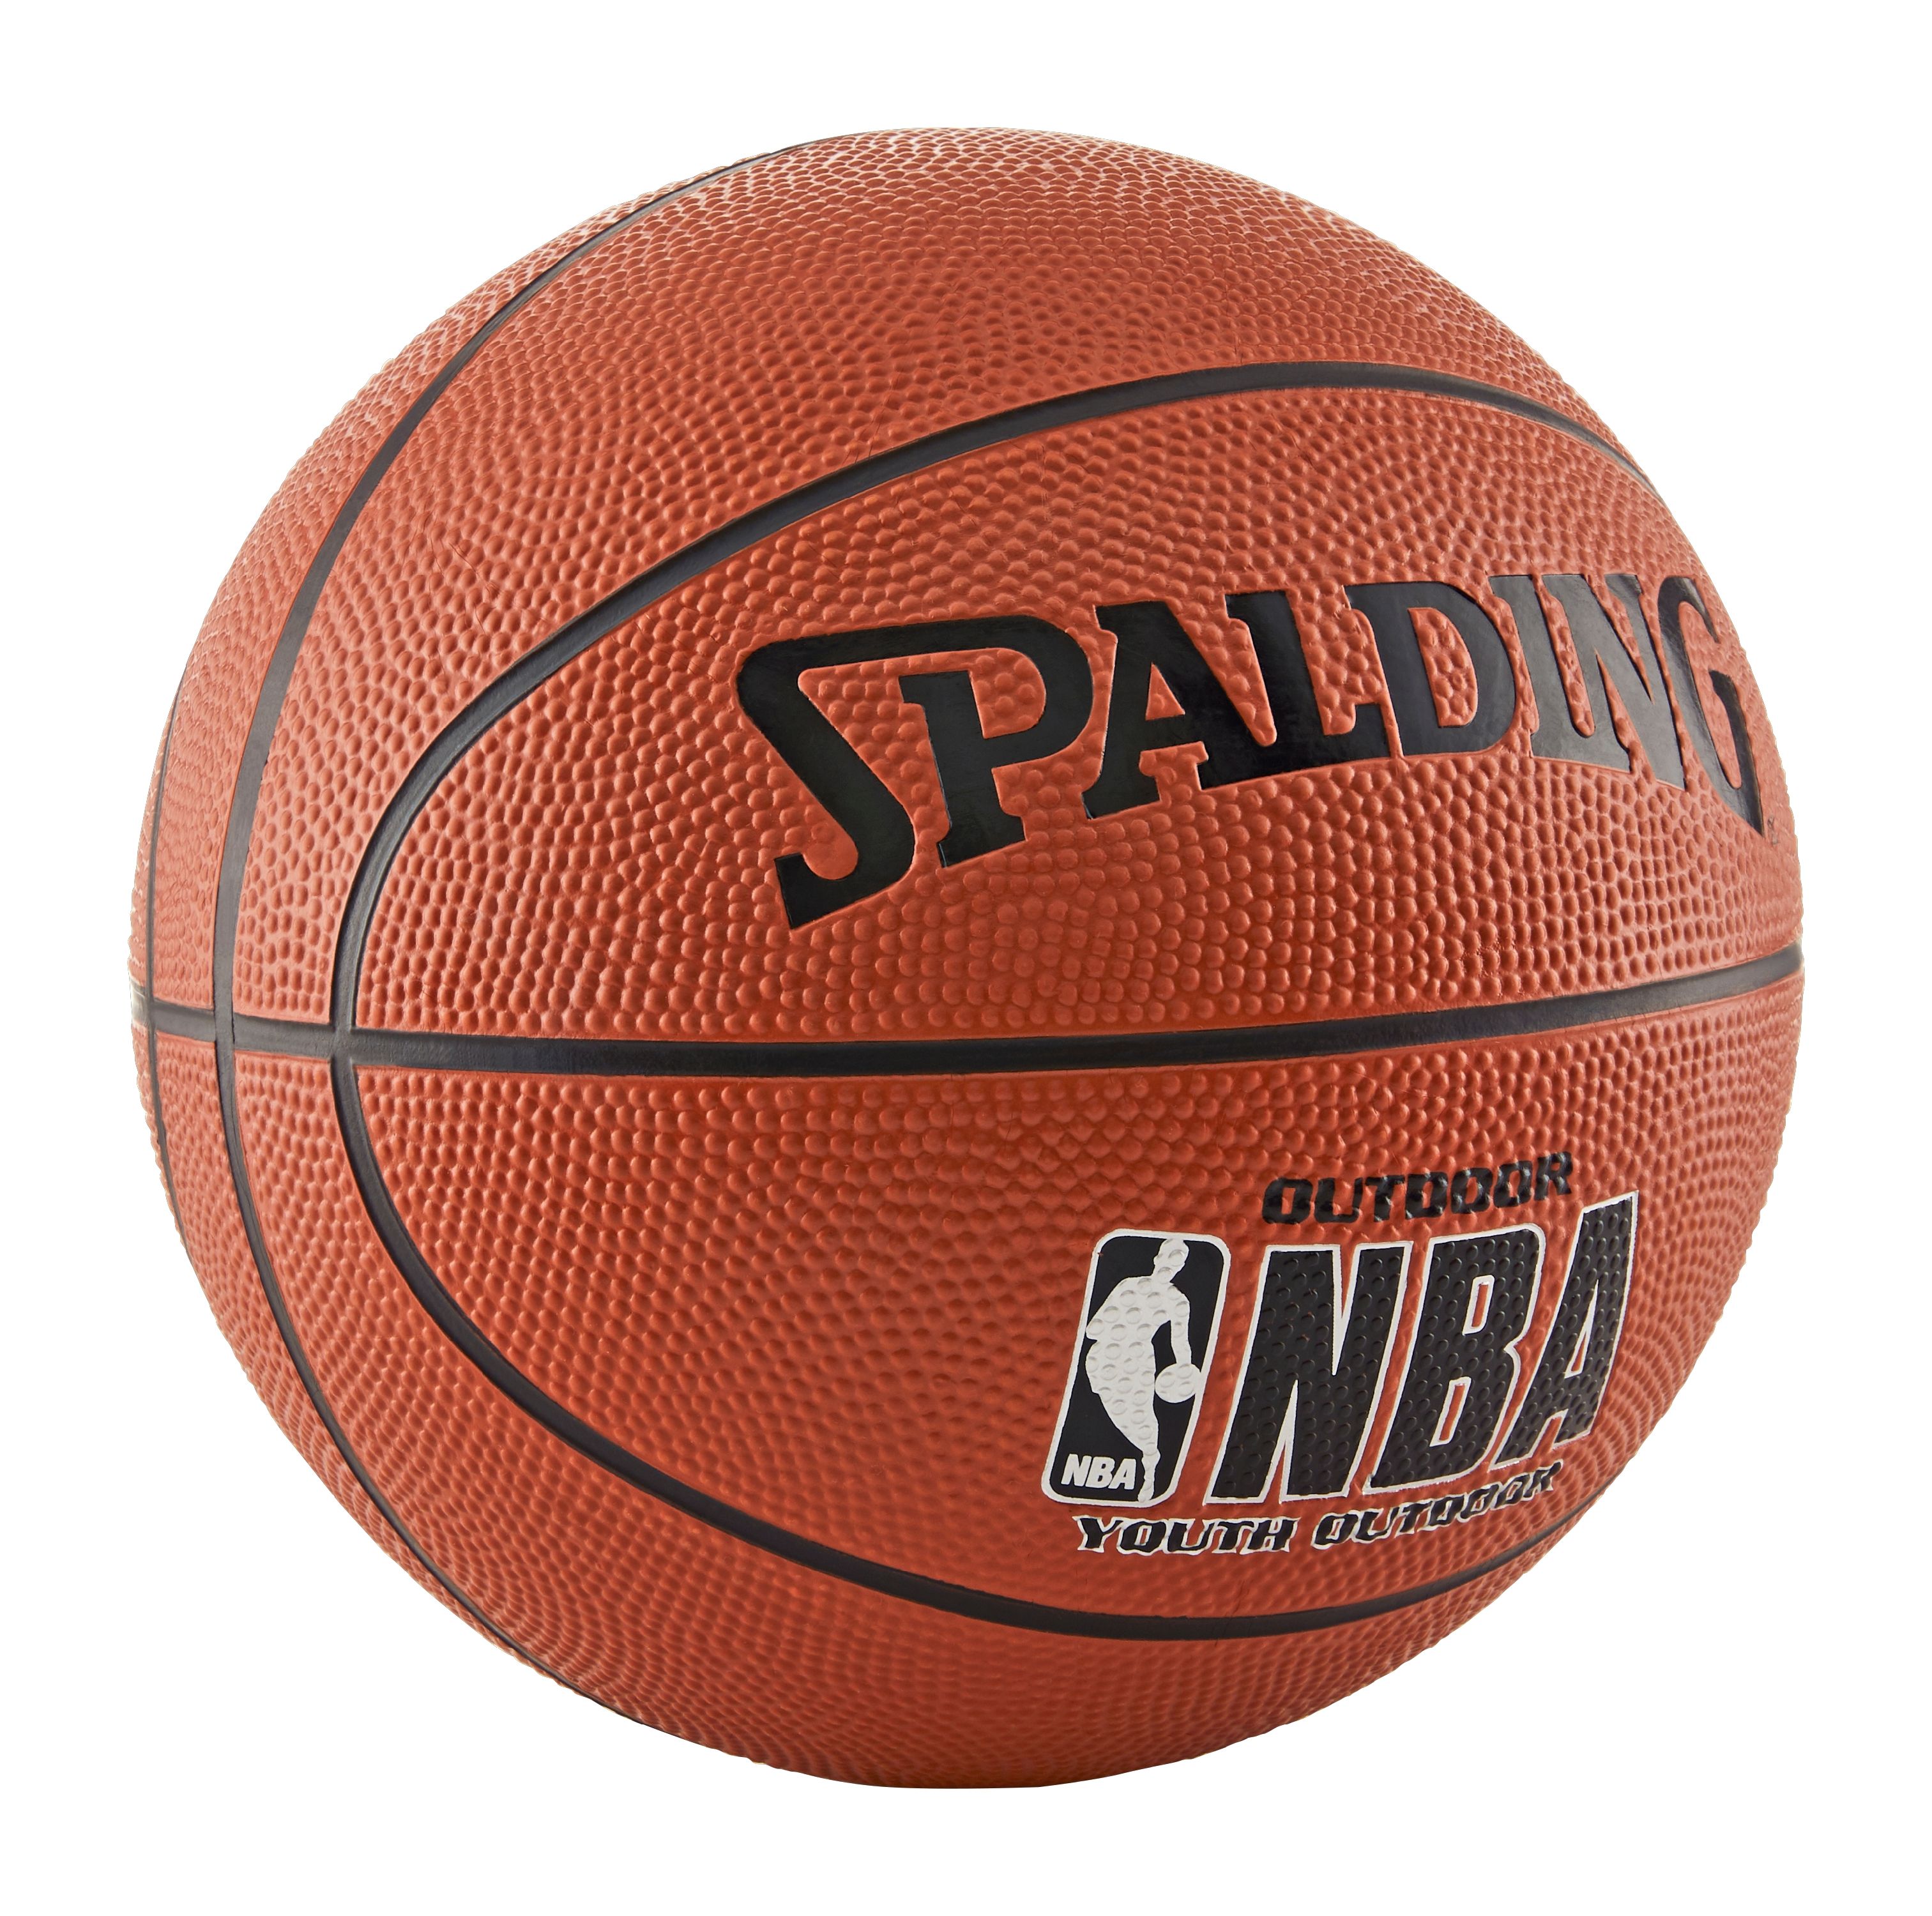 Spalding NBA Varsity Basketball, Youth Size (27.5") - image 4 of 4